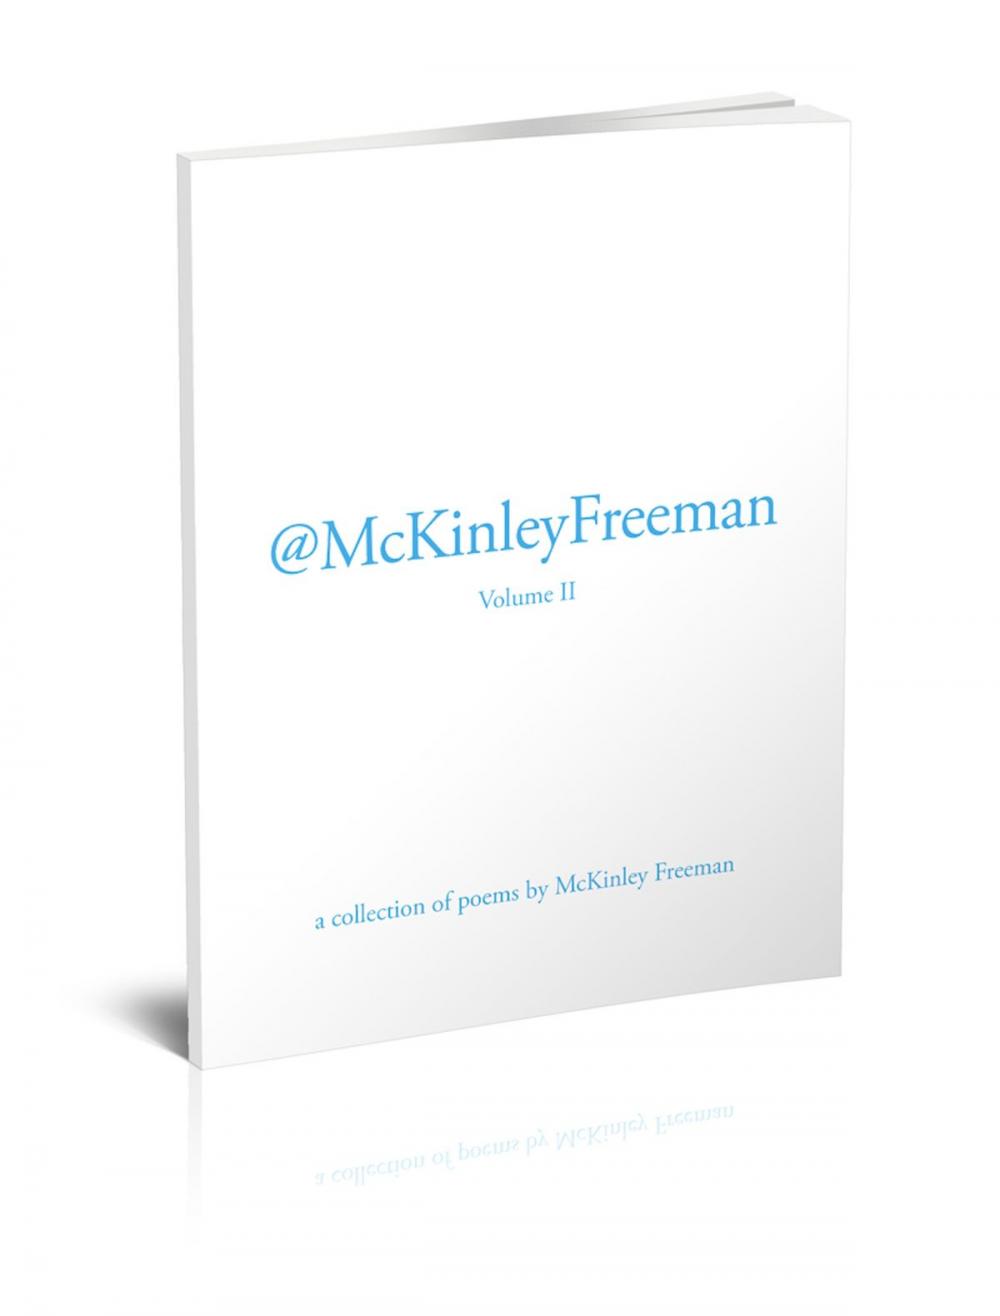 Big bigCover of @McKinleyFreeman Vol. II